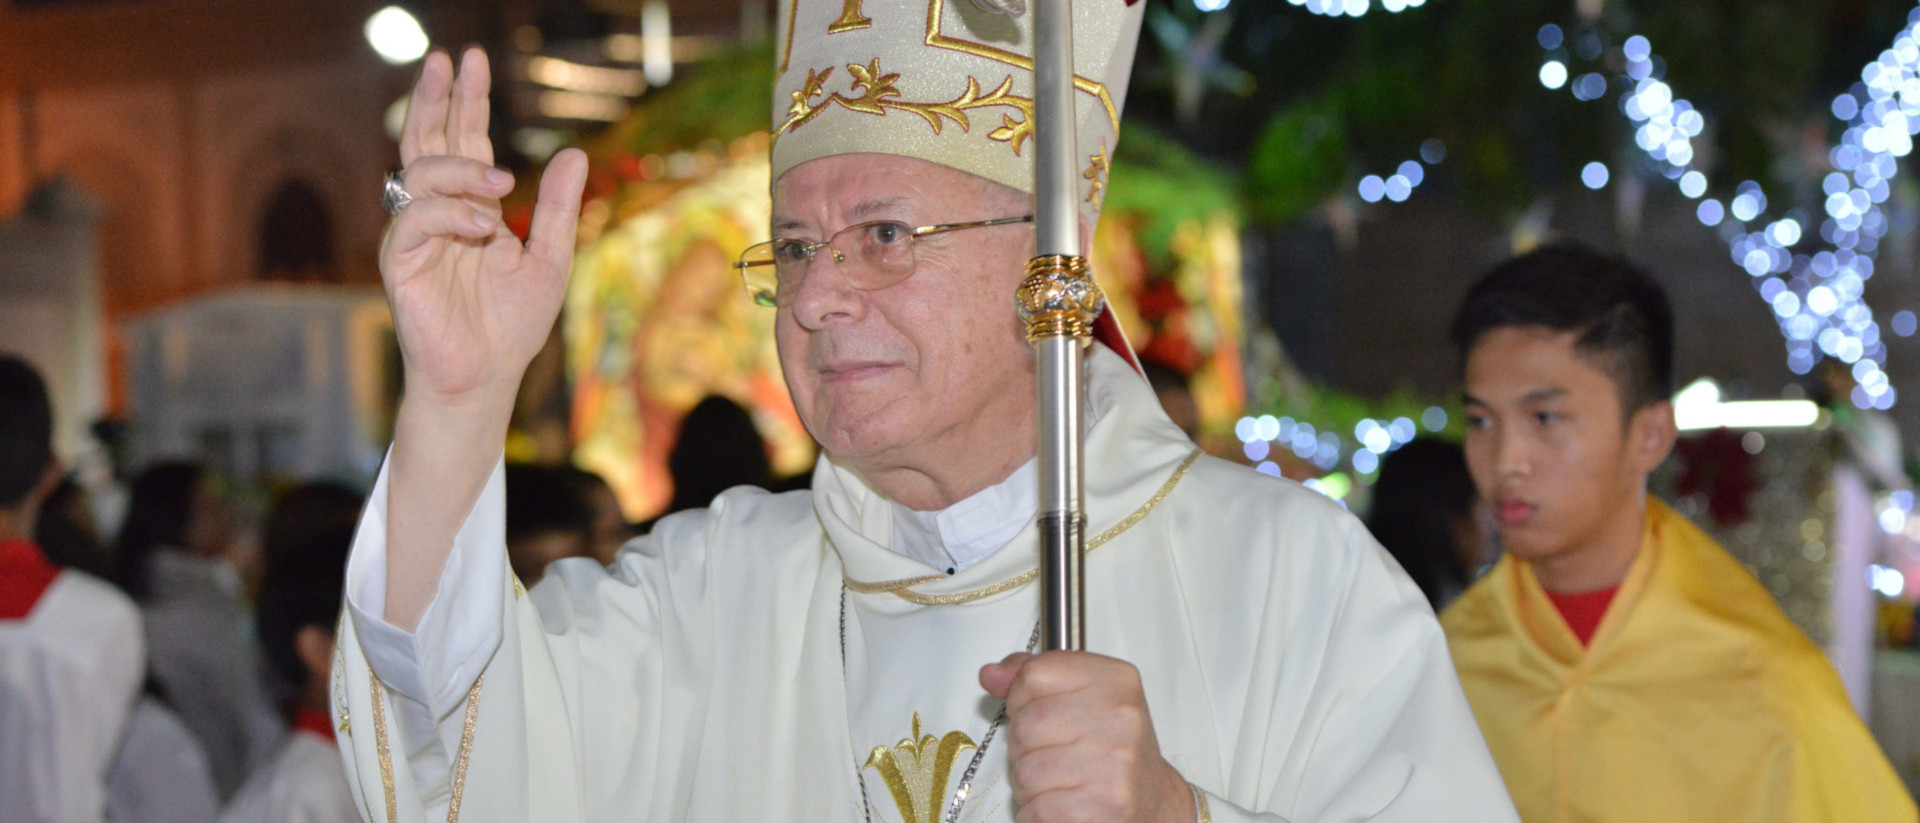 Archiv: Bischof Paul Hinder segnet die Gläubigen